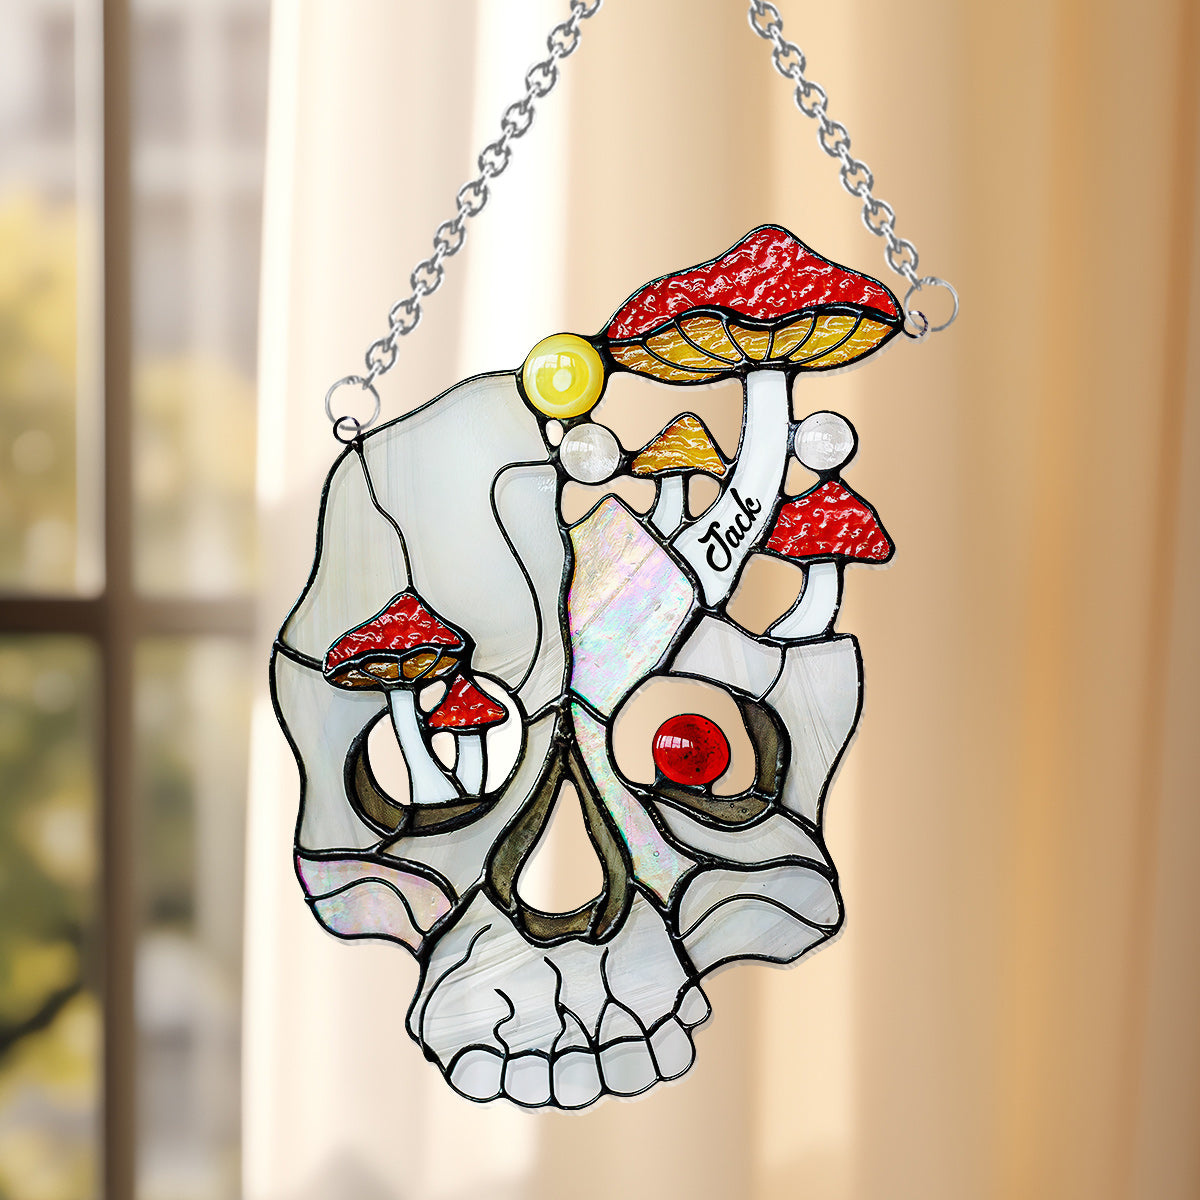 Mushroom White Skull - Personalized Skull Window Hanging Suncatcher Ornament